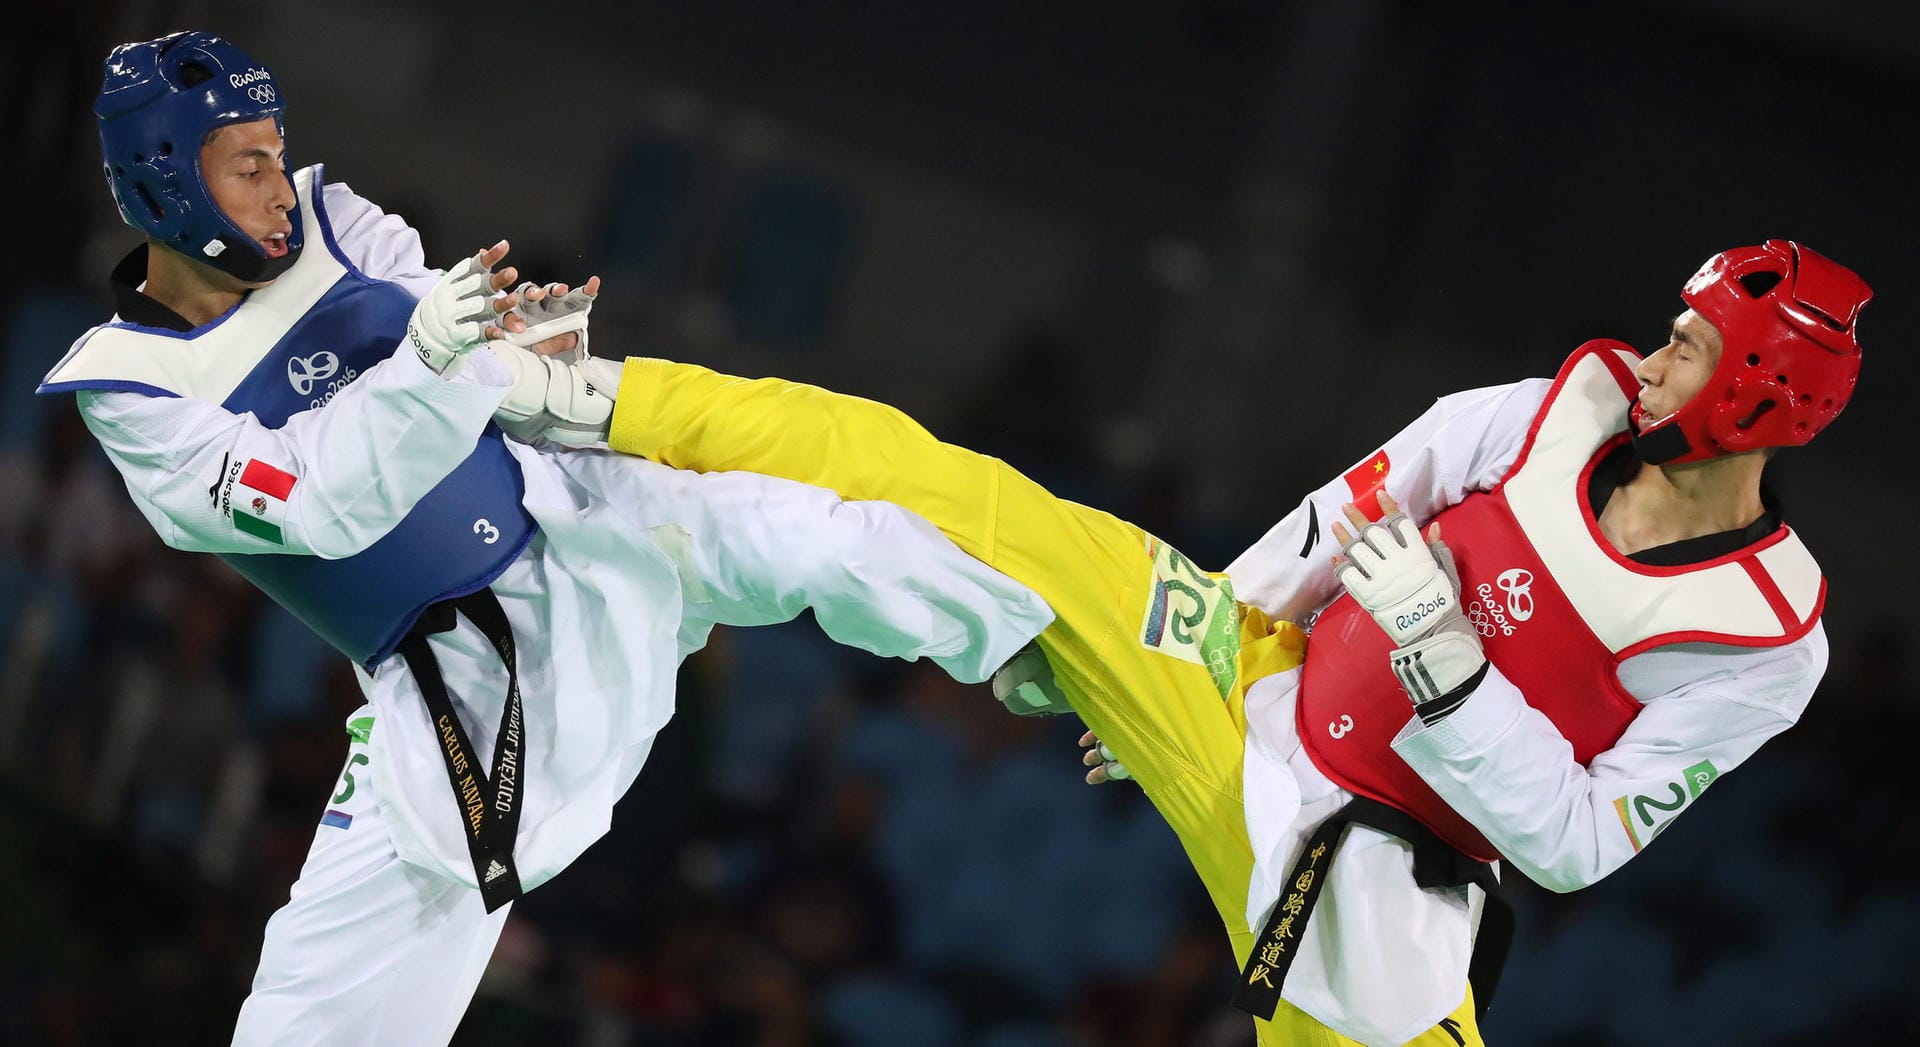 Körperkontakt: Der Chinese Shuai Zhao und Carlos Ruben Navarro Valdez aus Mexiko standen sich in Taekwondo-Halbfinale der Klasse bis 58 Kilogramm gegenüber. Mit dem besseren Ende für den Asiaten, der ins Finale einzog.